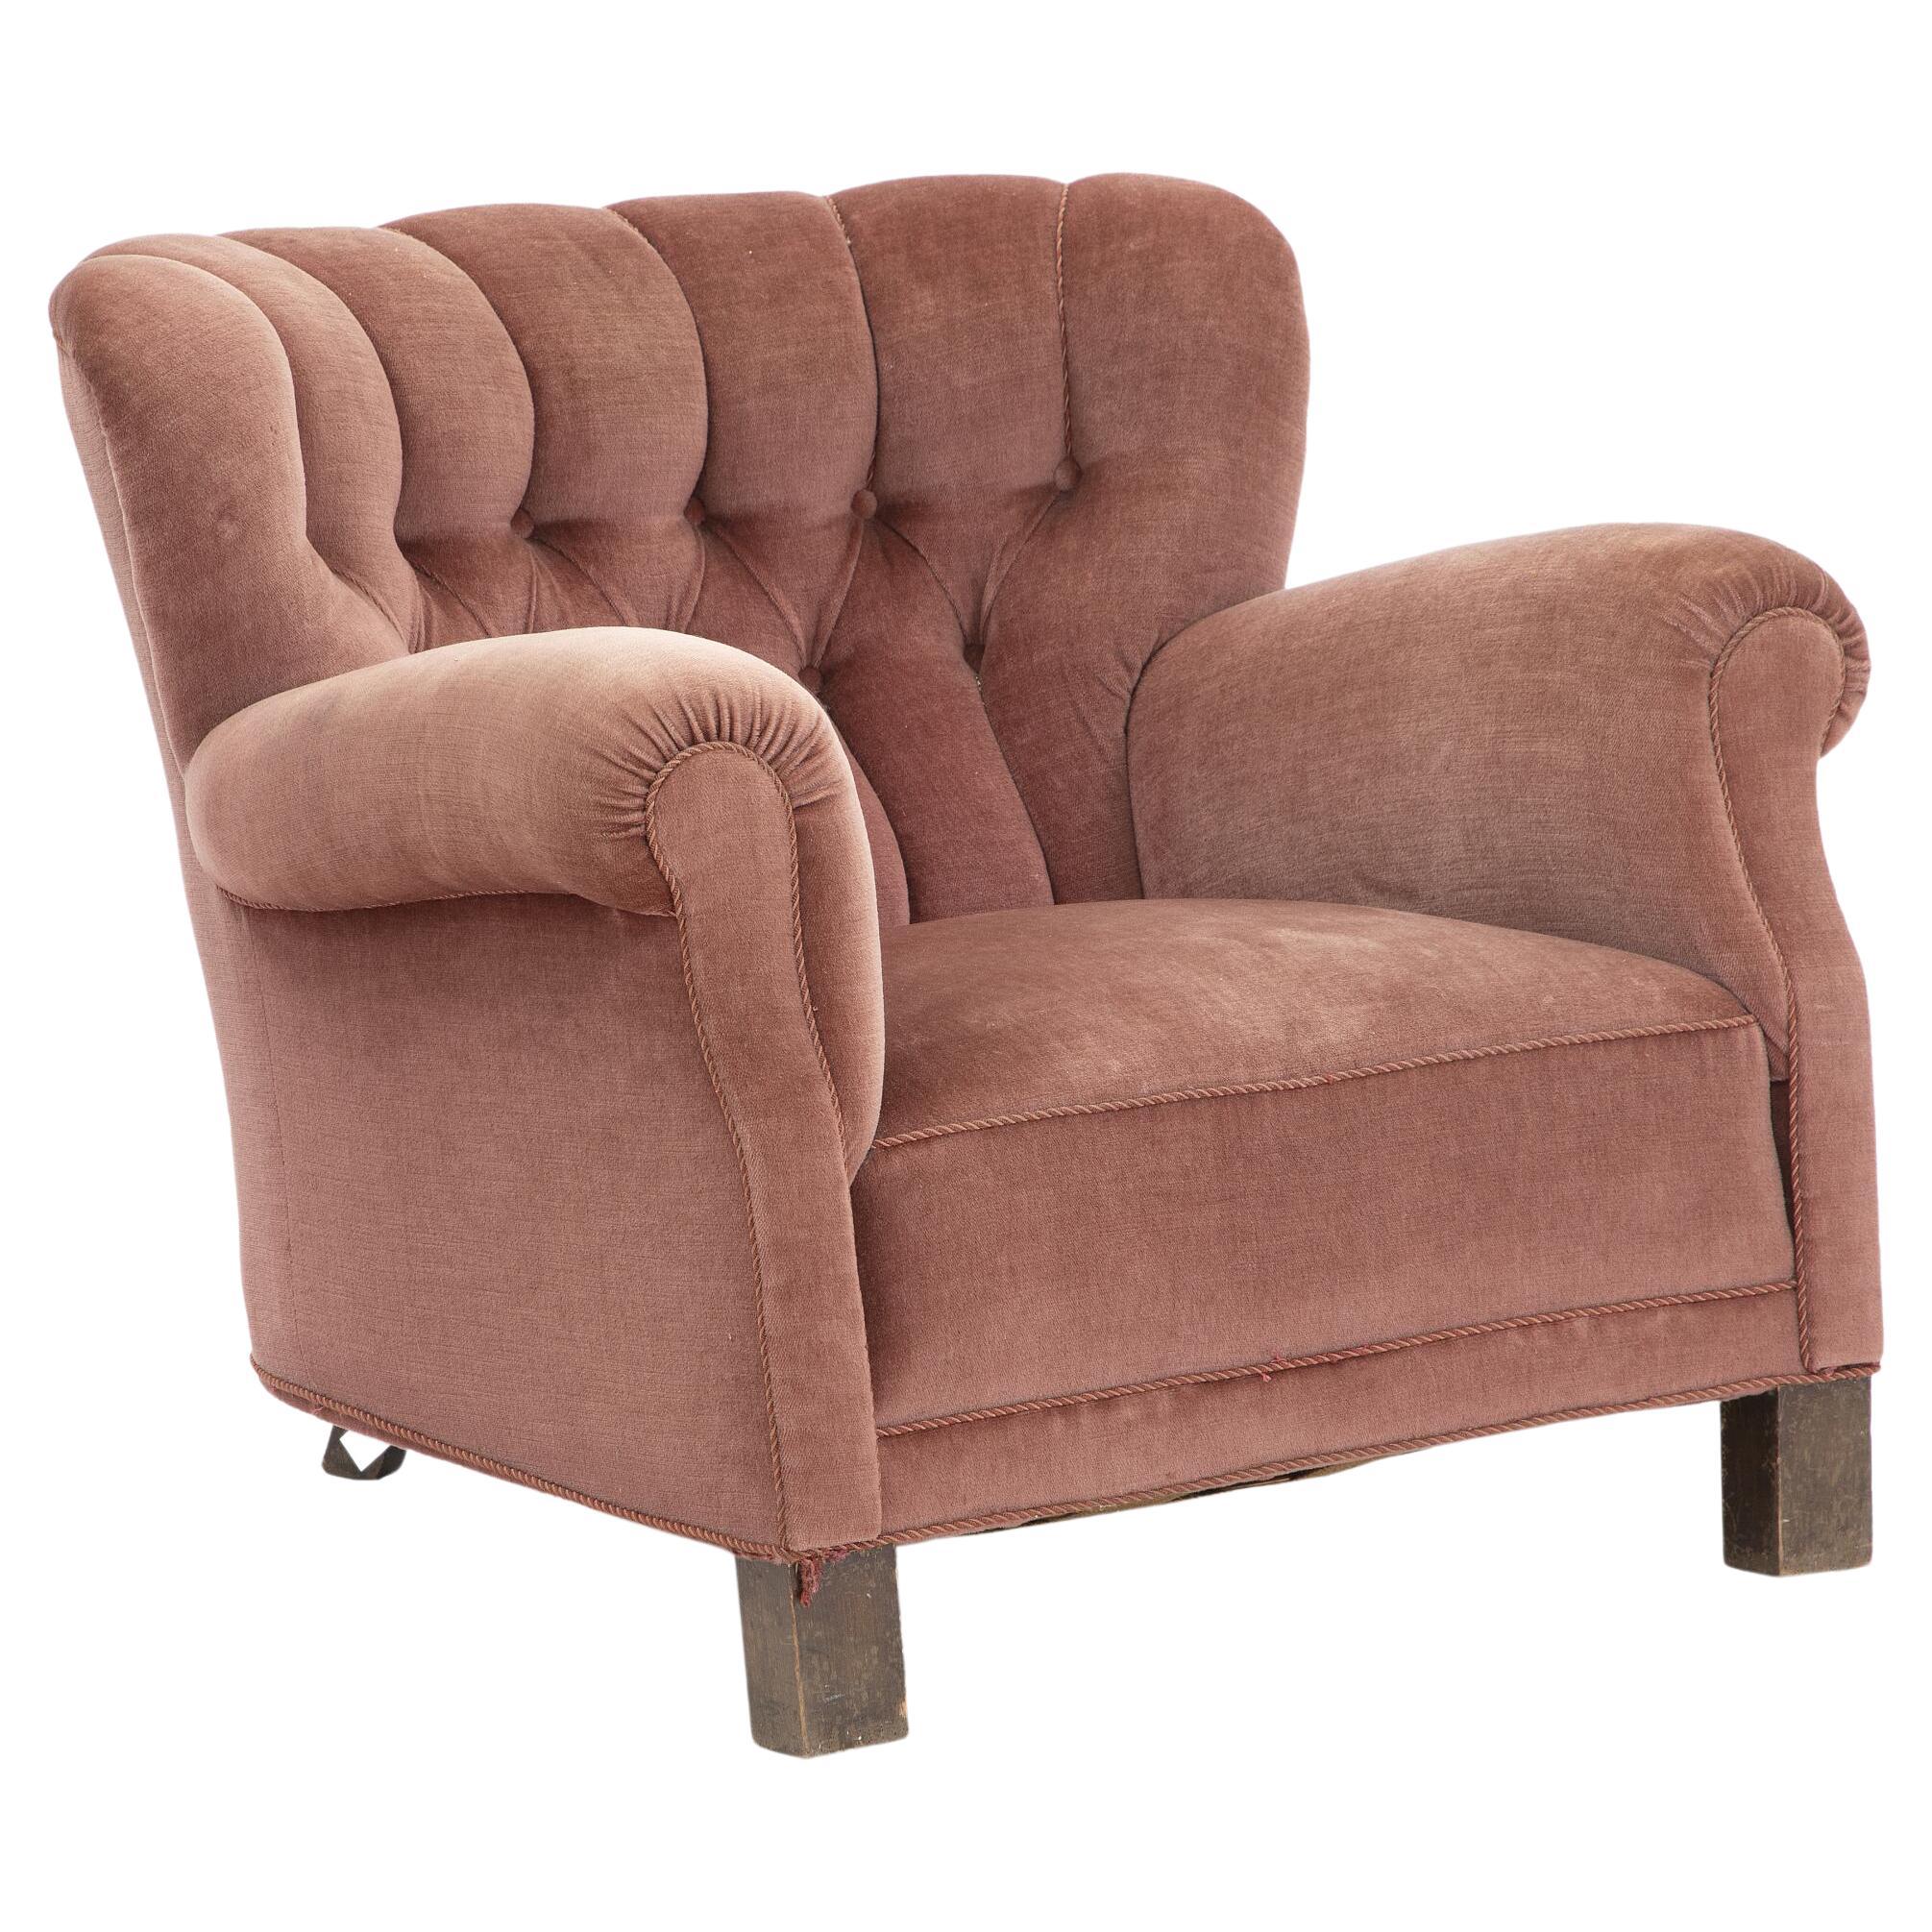 Grand fauteuil modèle 1518 en velours rose. Fabriqué chez Fritz Hansen, années 1930-40.